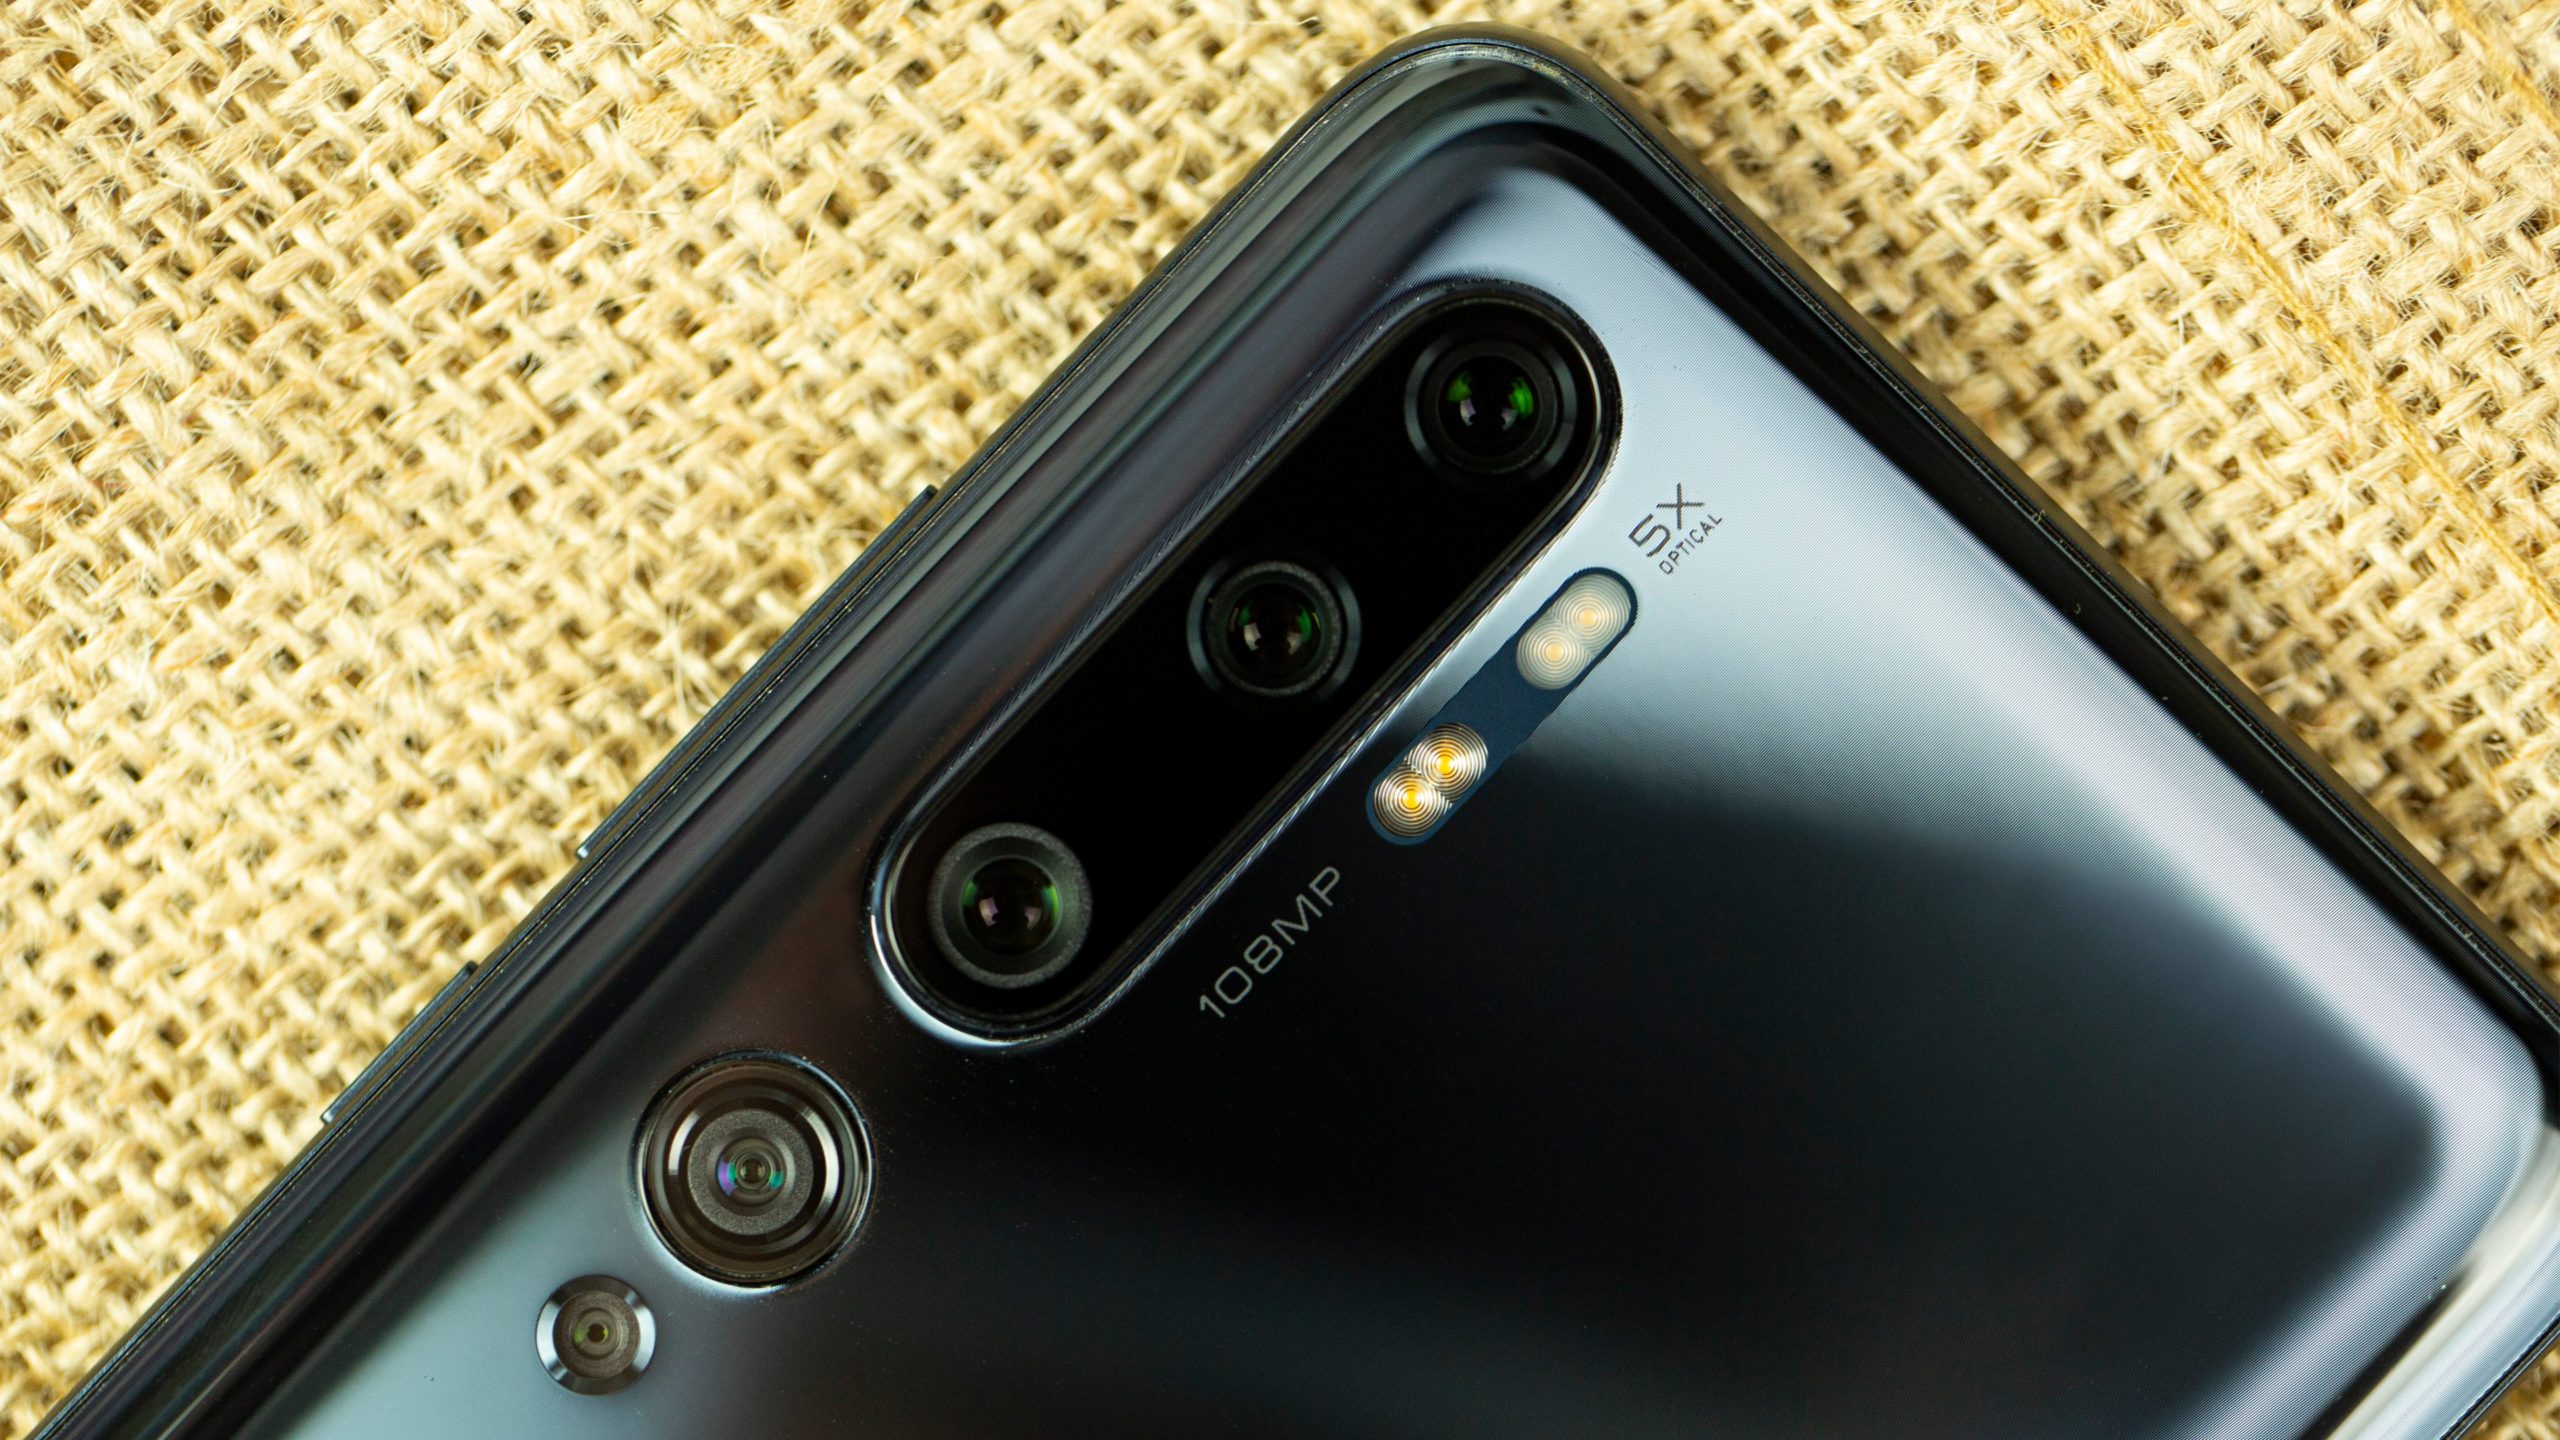 Xiaomi Mi 10 will surely come with a massive 108MP camera sensor